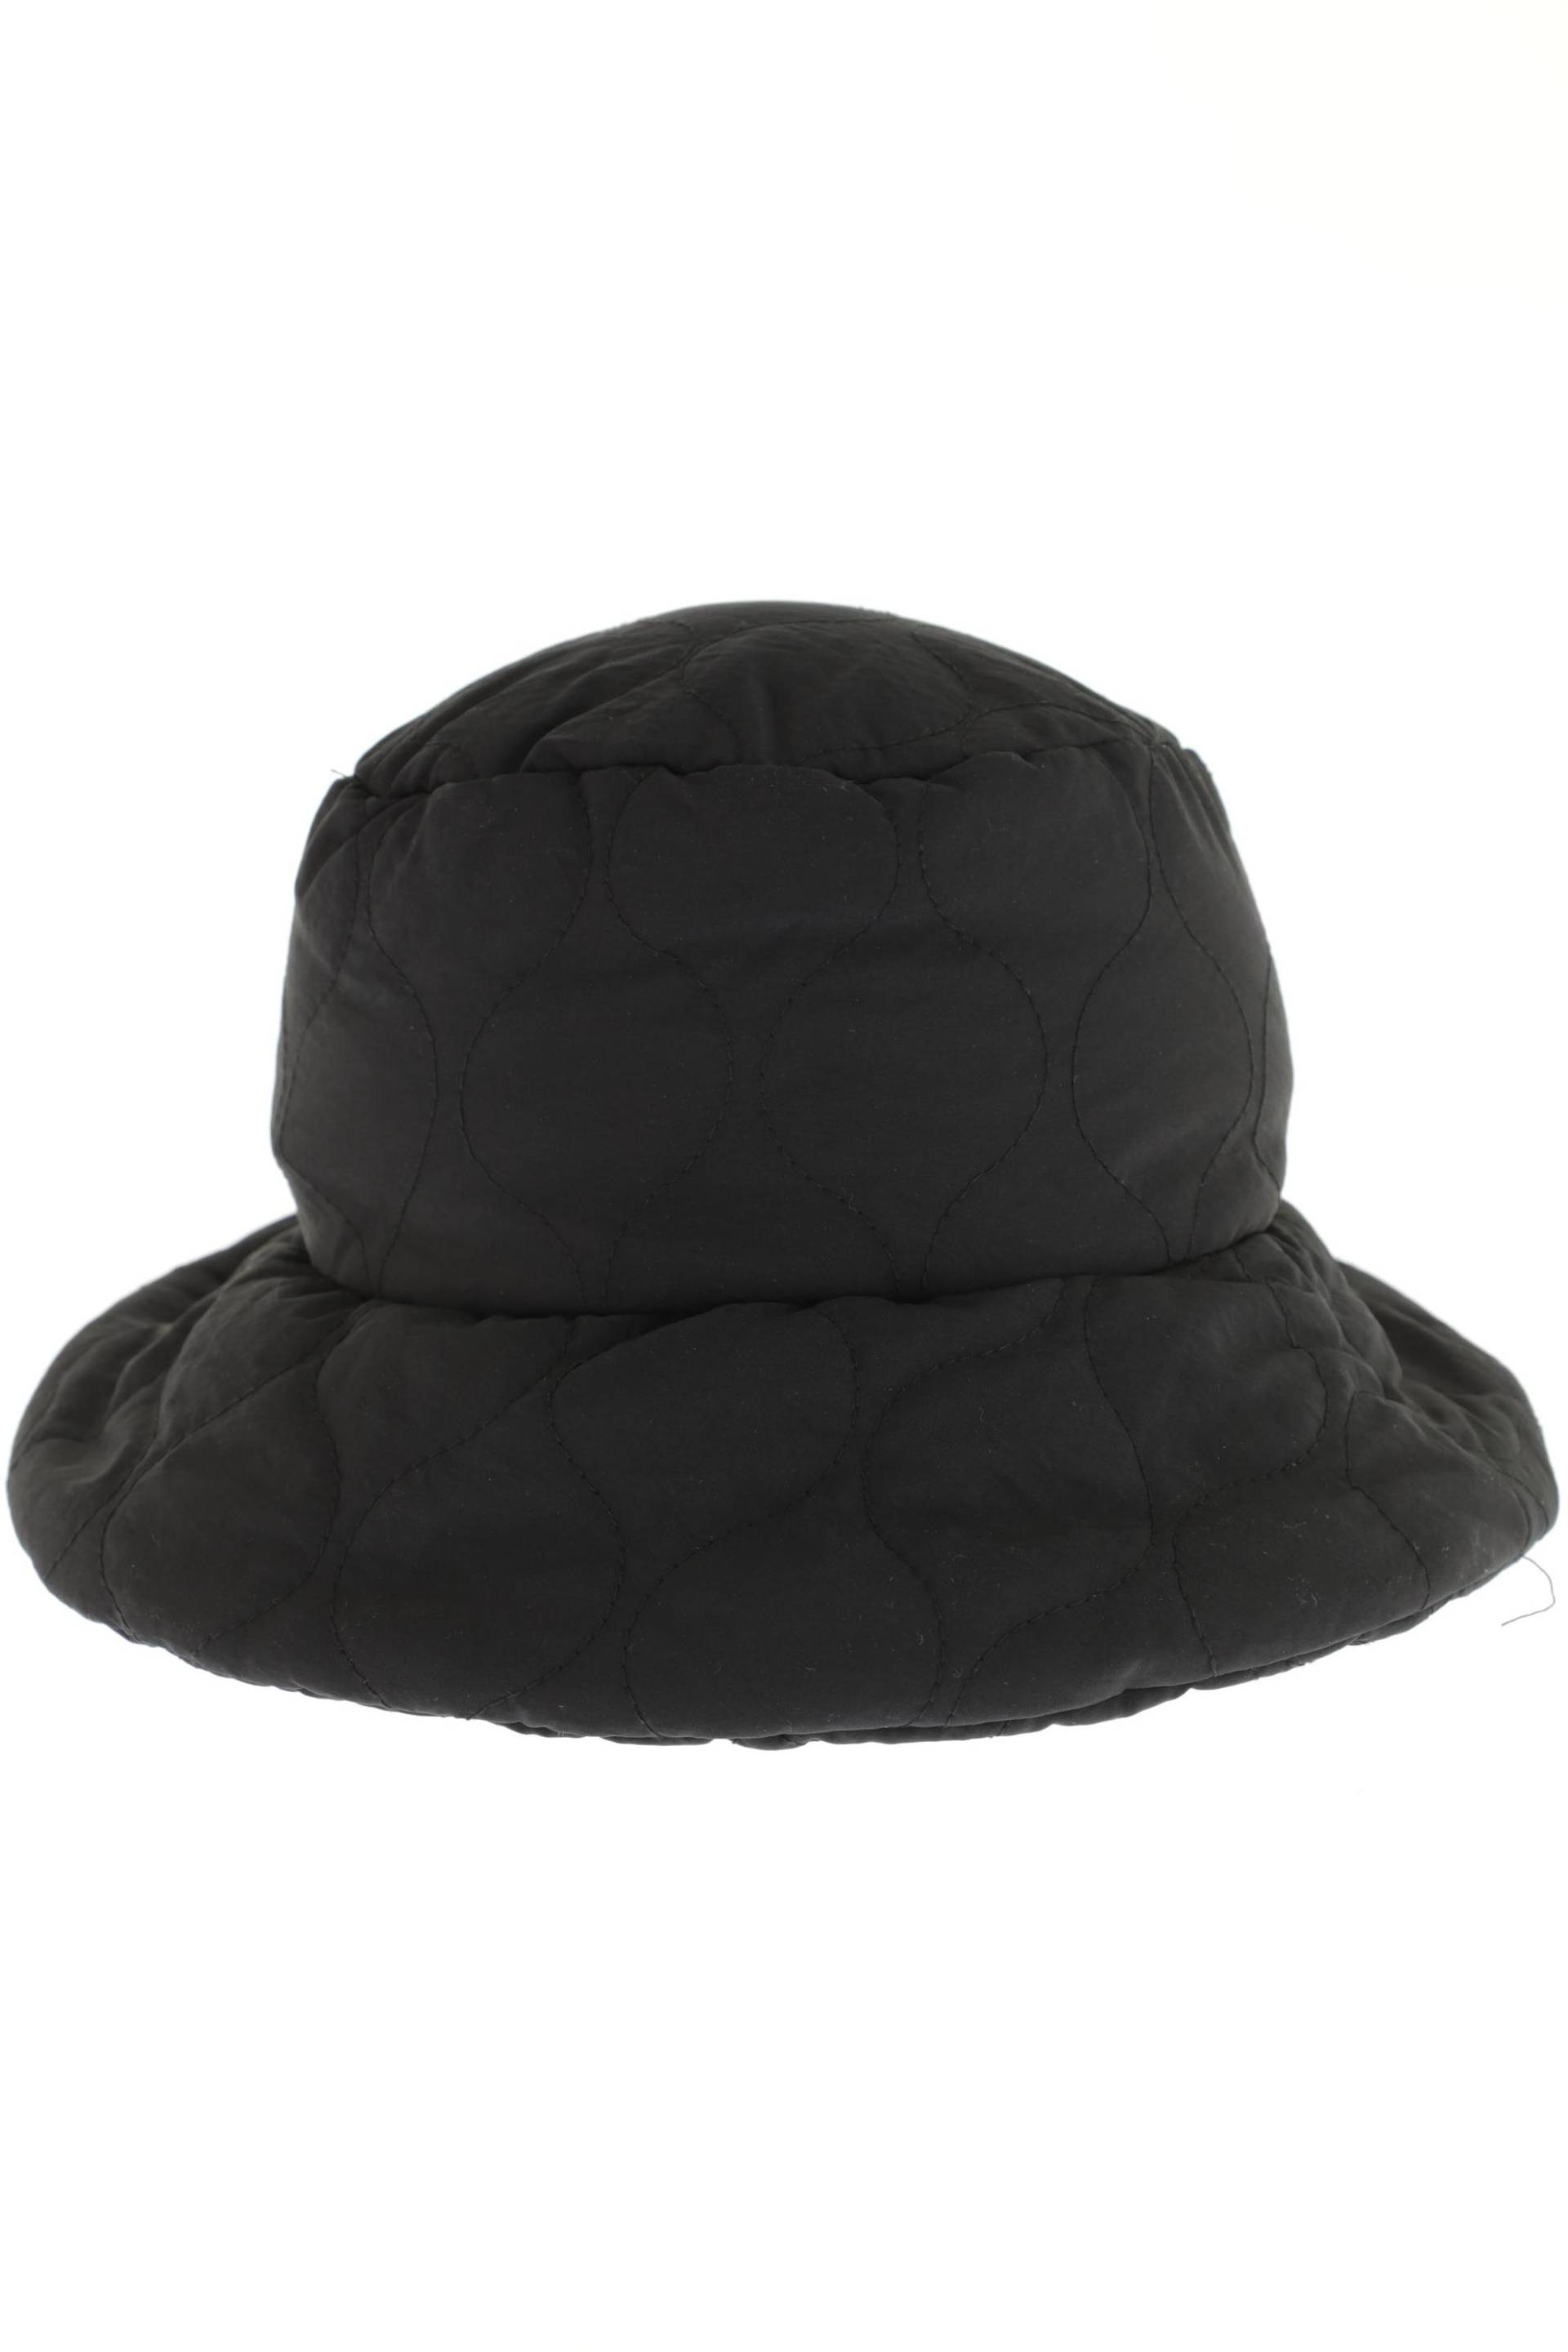 ZARA Damen Hut/Mütze, schwarz von ZARA